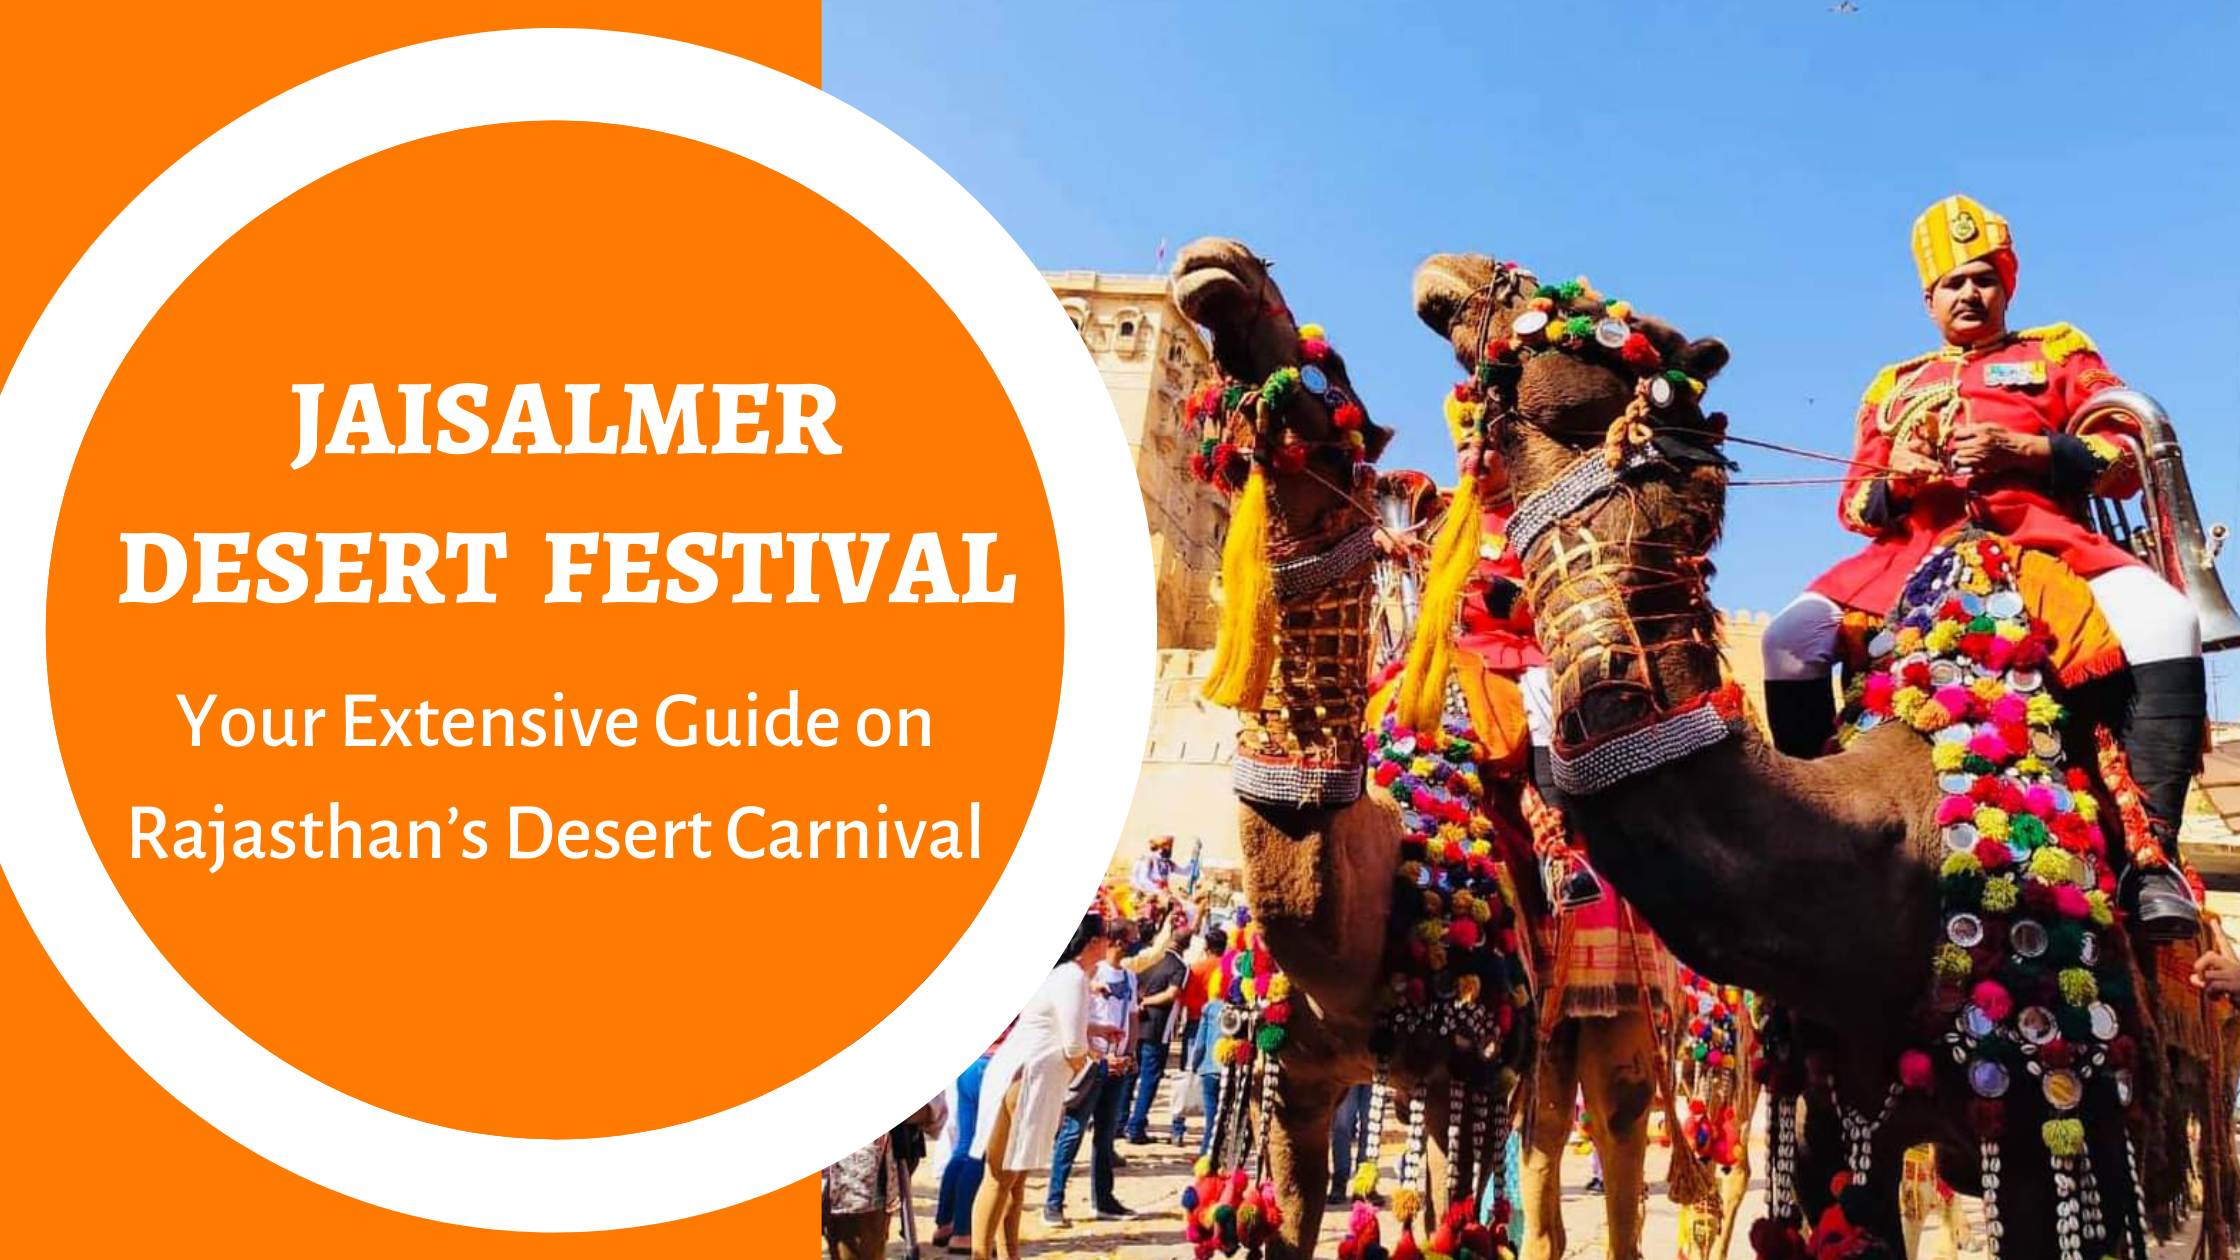 Jaisalmer Desert Festival Wallpapers